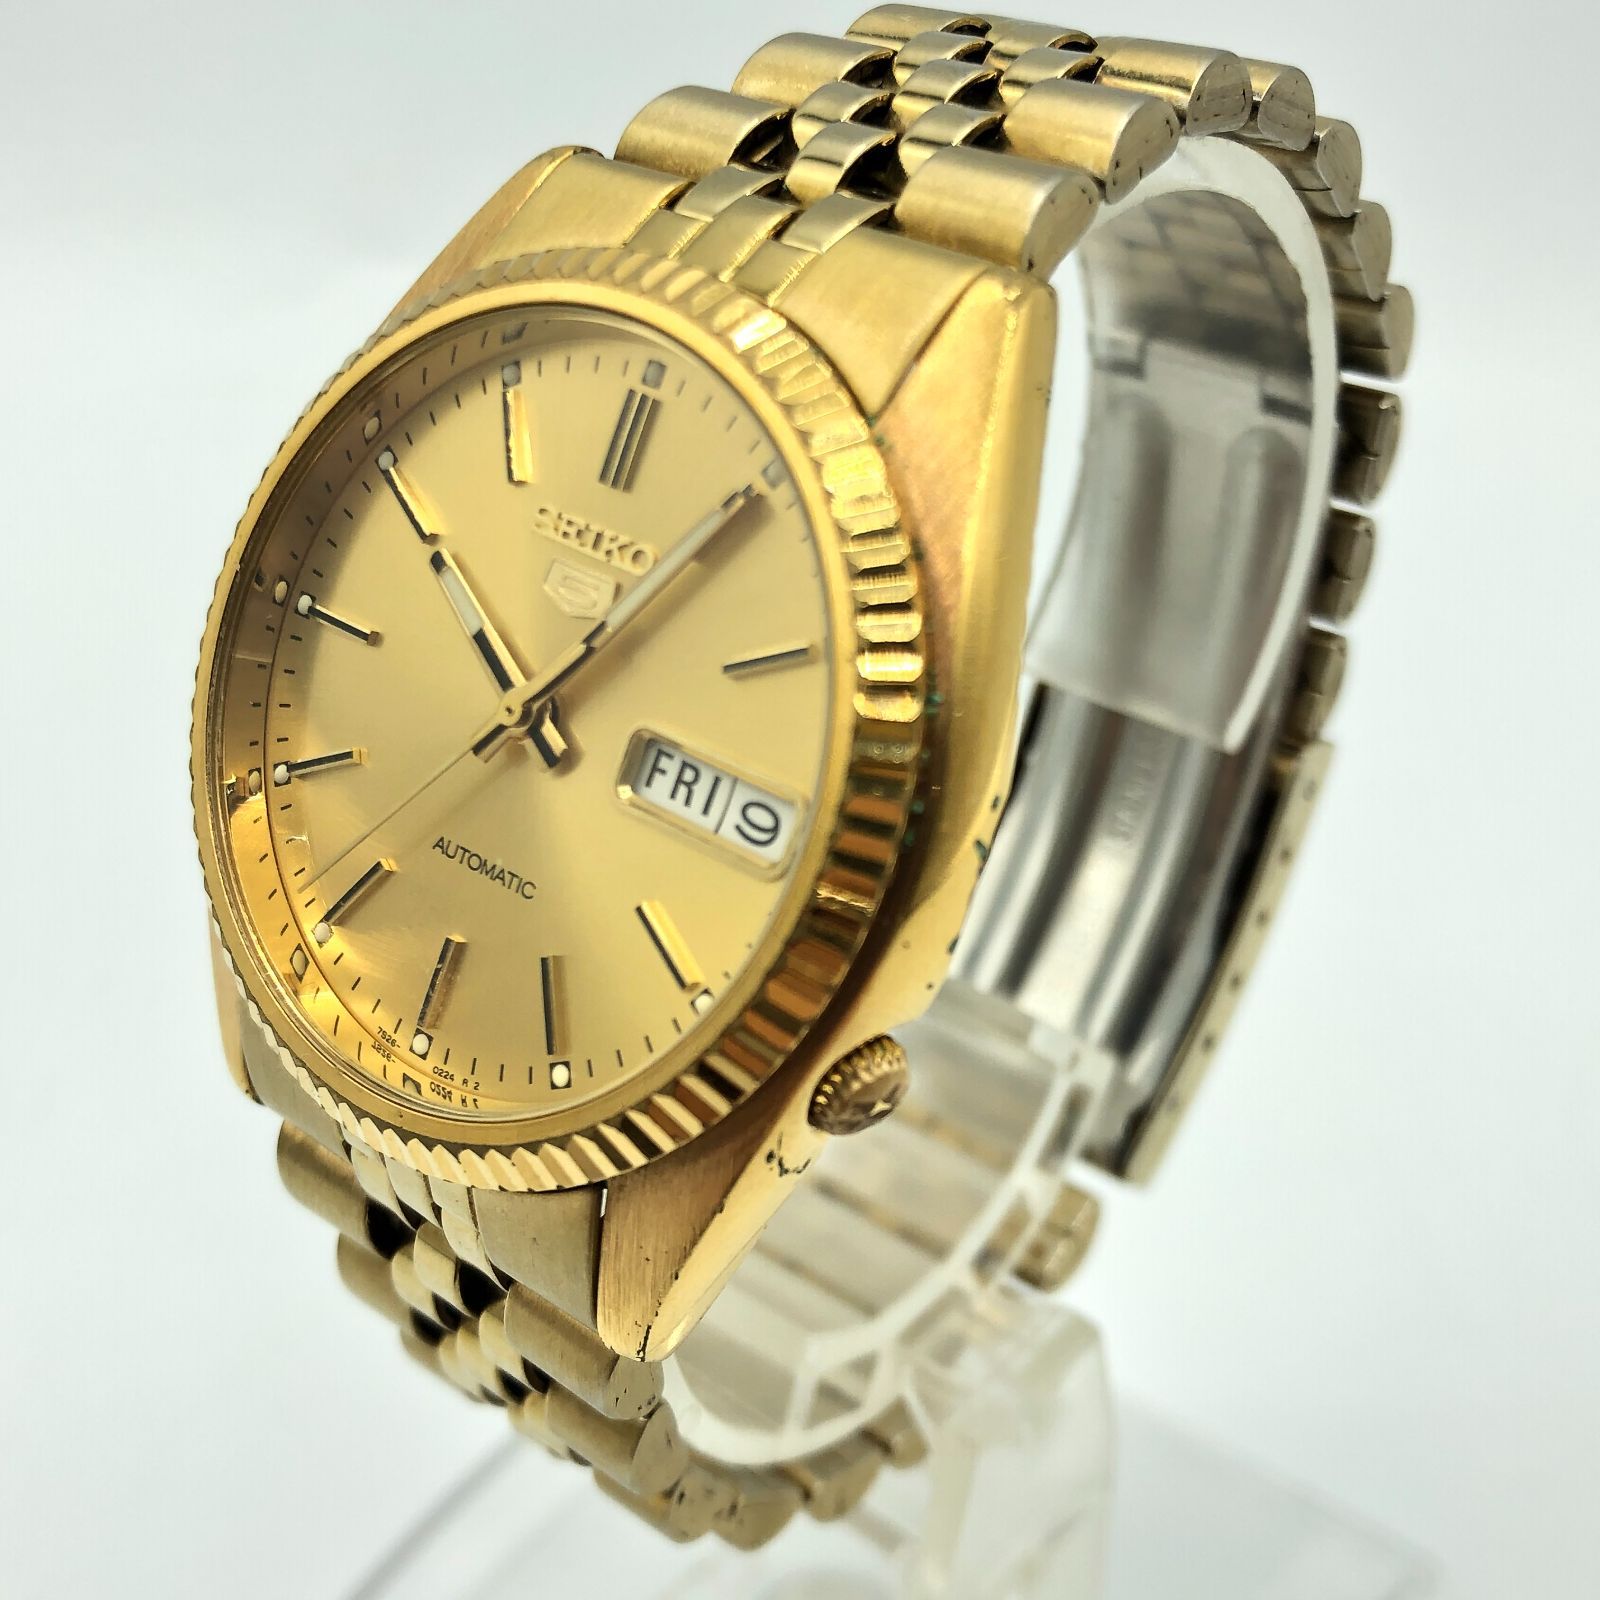 SEIKO 5 腕時計 7S26-0500 ゴールド 金色 オートマチック 自動巻き